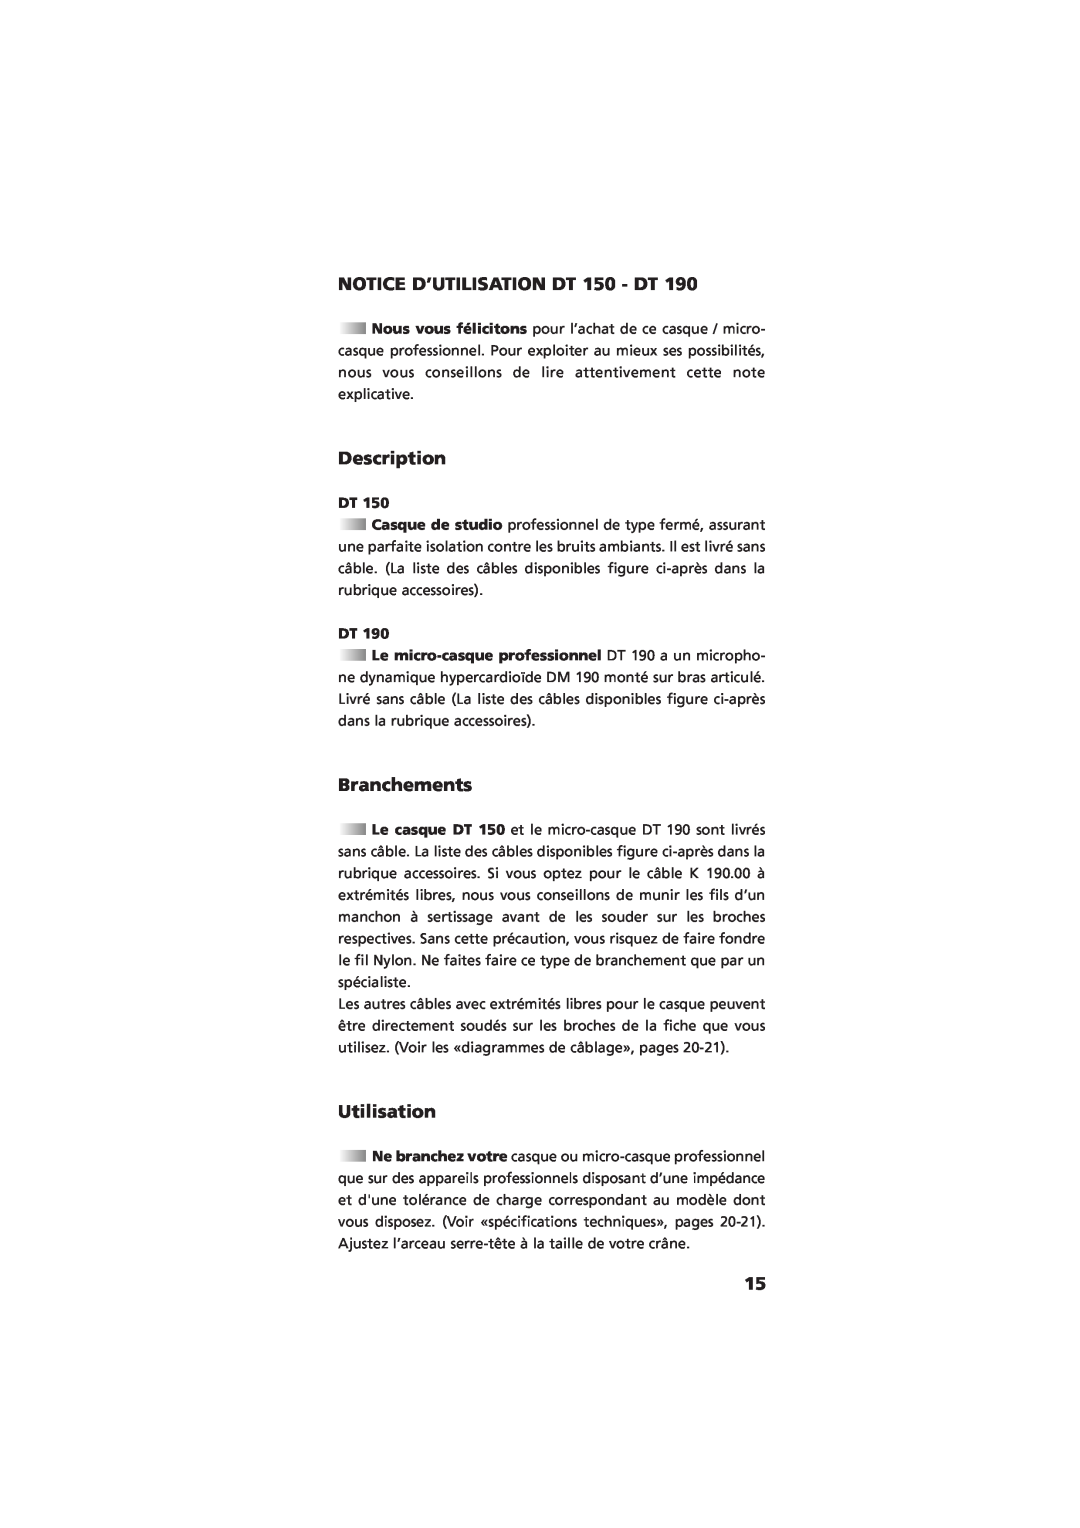 NEC DT 190 manual NOTICE D’UTILISATION DT 150 - DT, Description, Branchements, Utilisation 